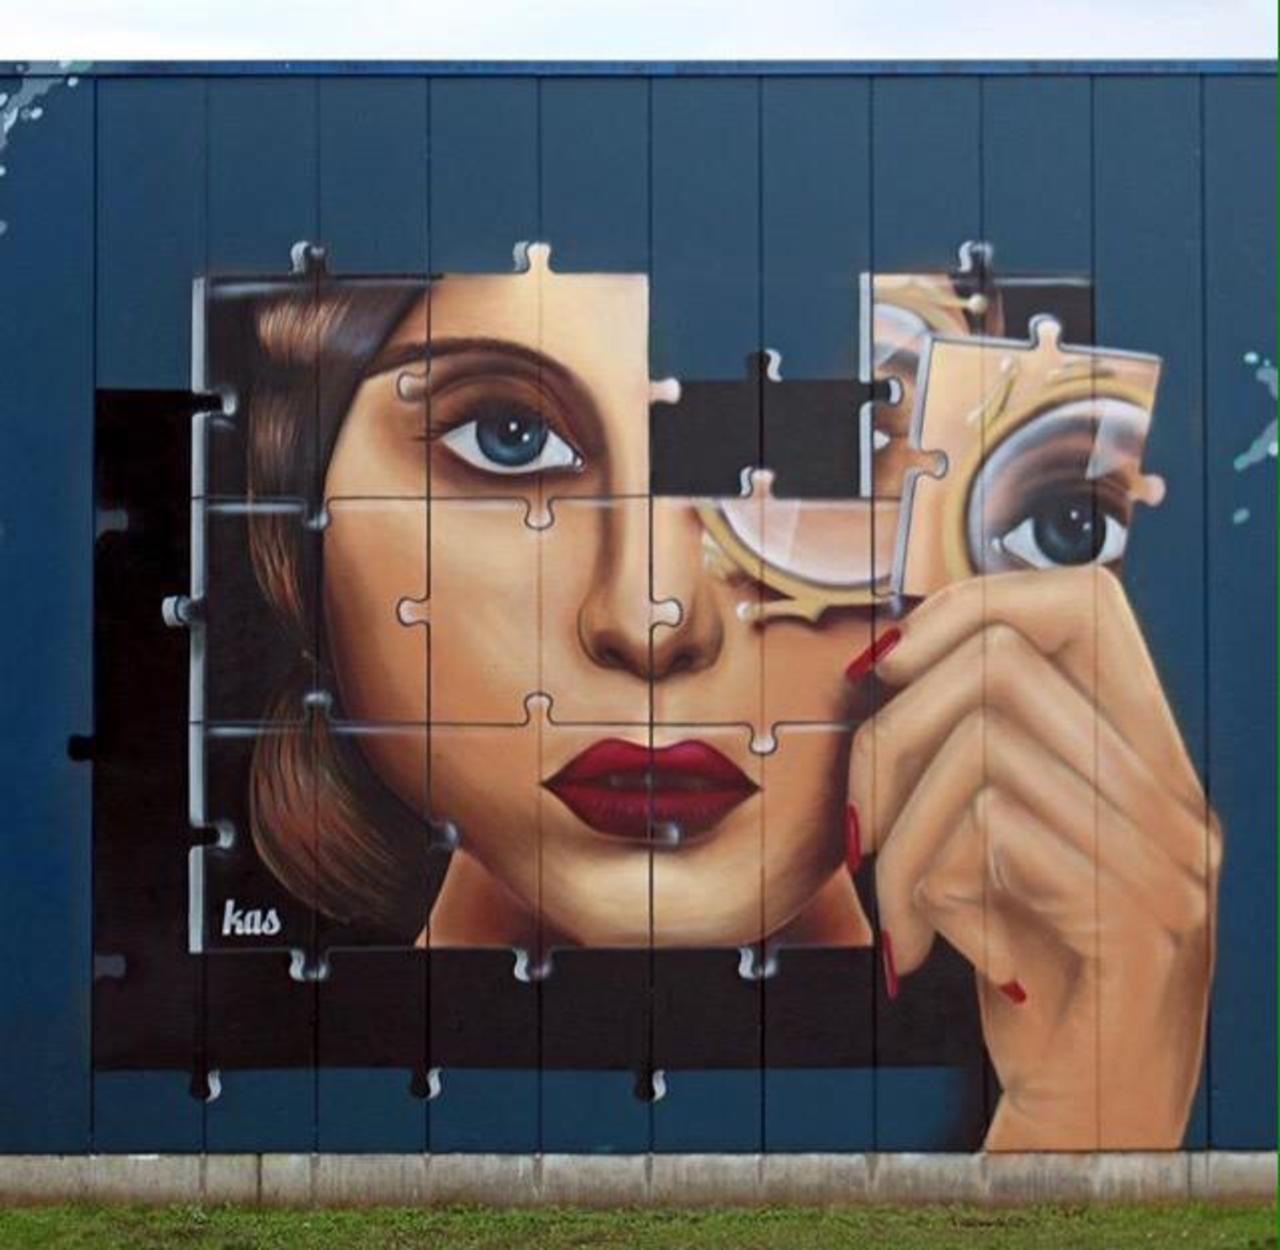 Kas Art's new Street Art "Piece of me" in Aalst Belgium 

#art #graffiti #mural #streetart http://t.co/UrjMtIZdJY